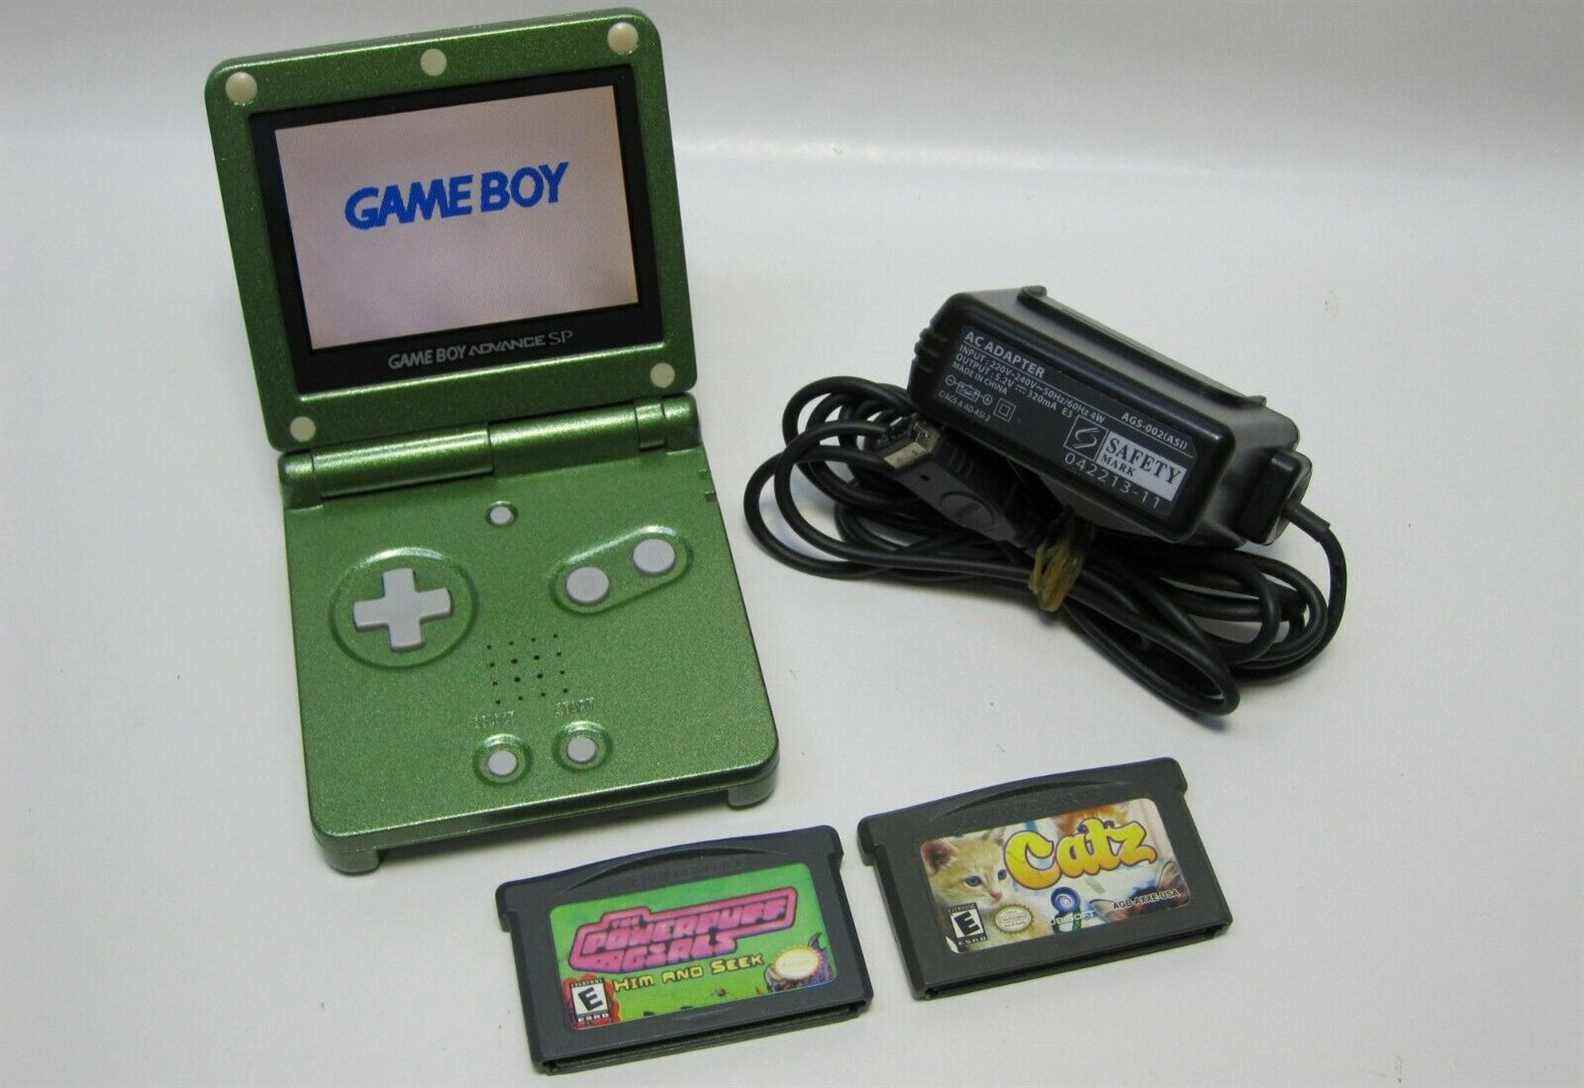 Game Boy Advance SP vert